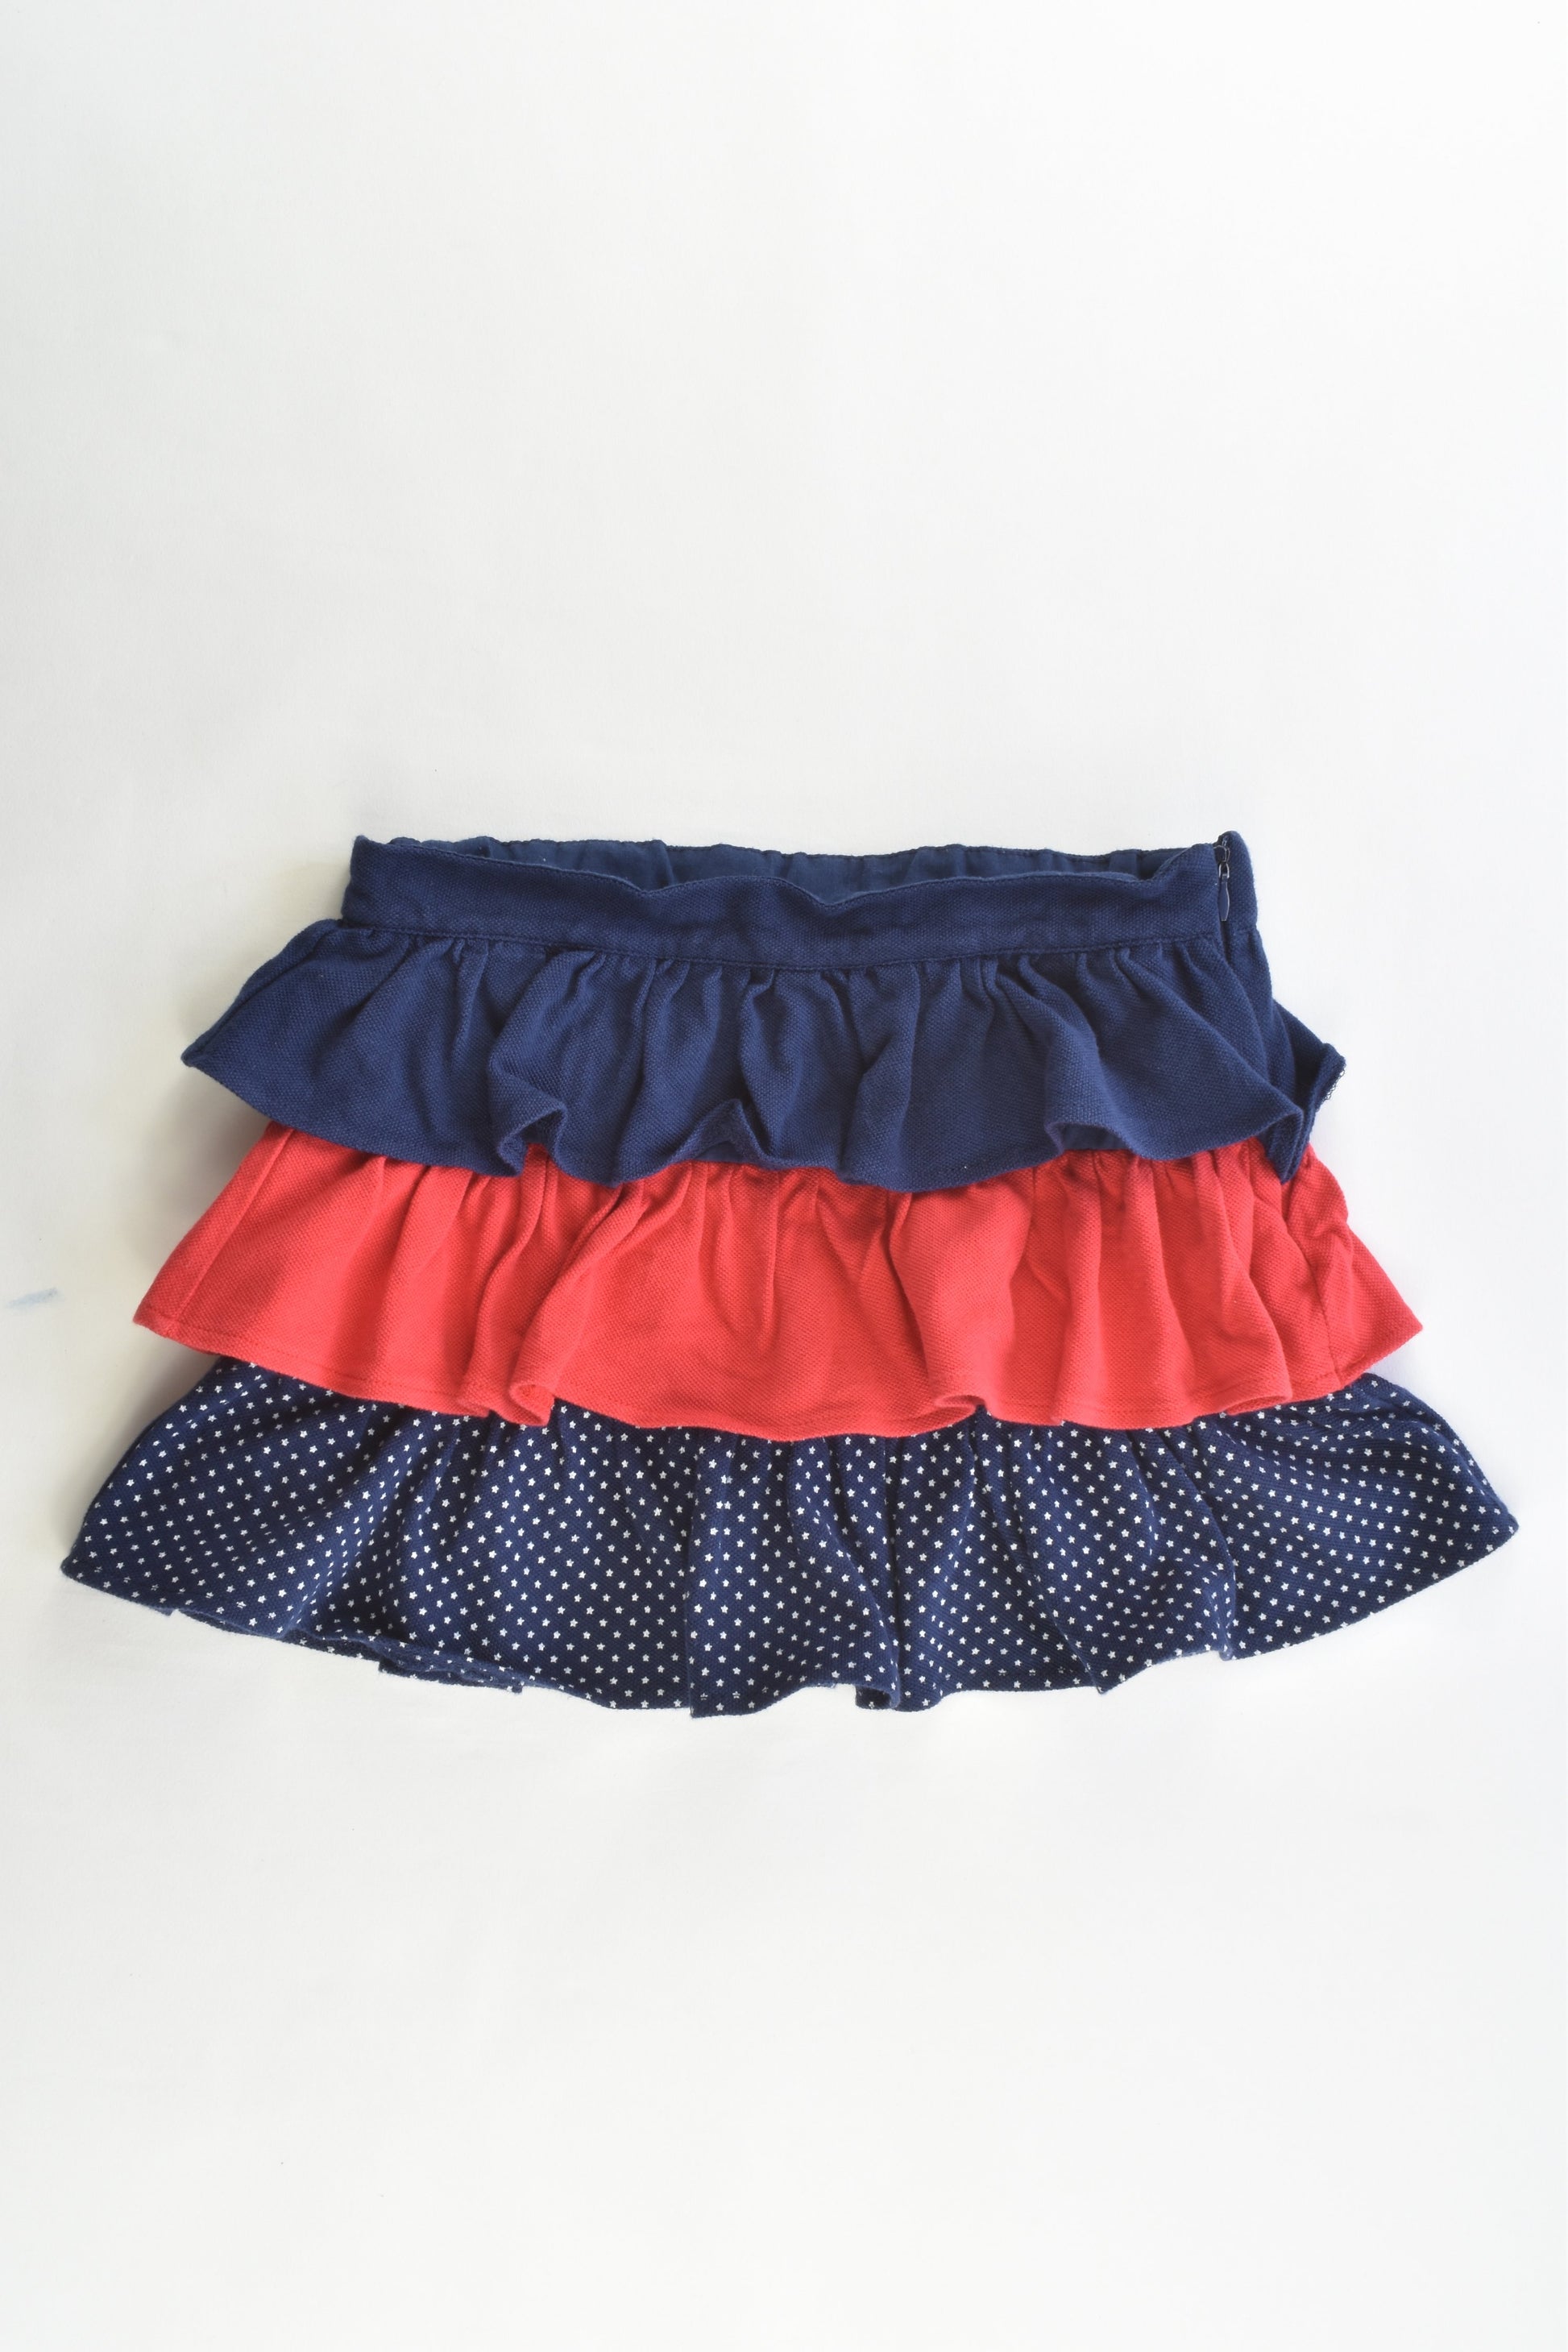 Tutto Piccolo (Spain) Size 8 Skirt